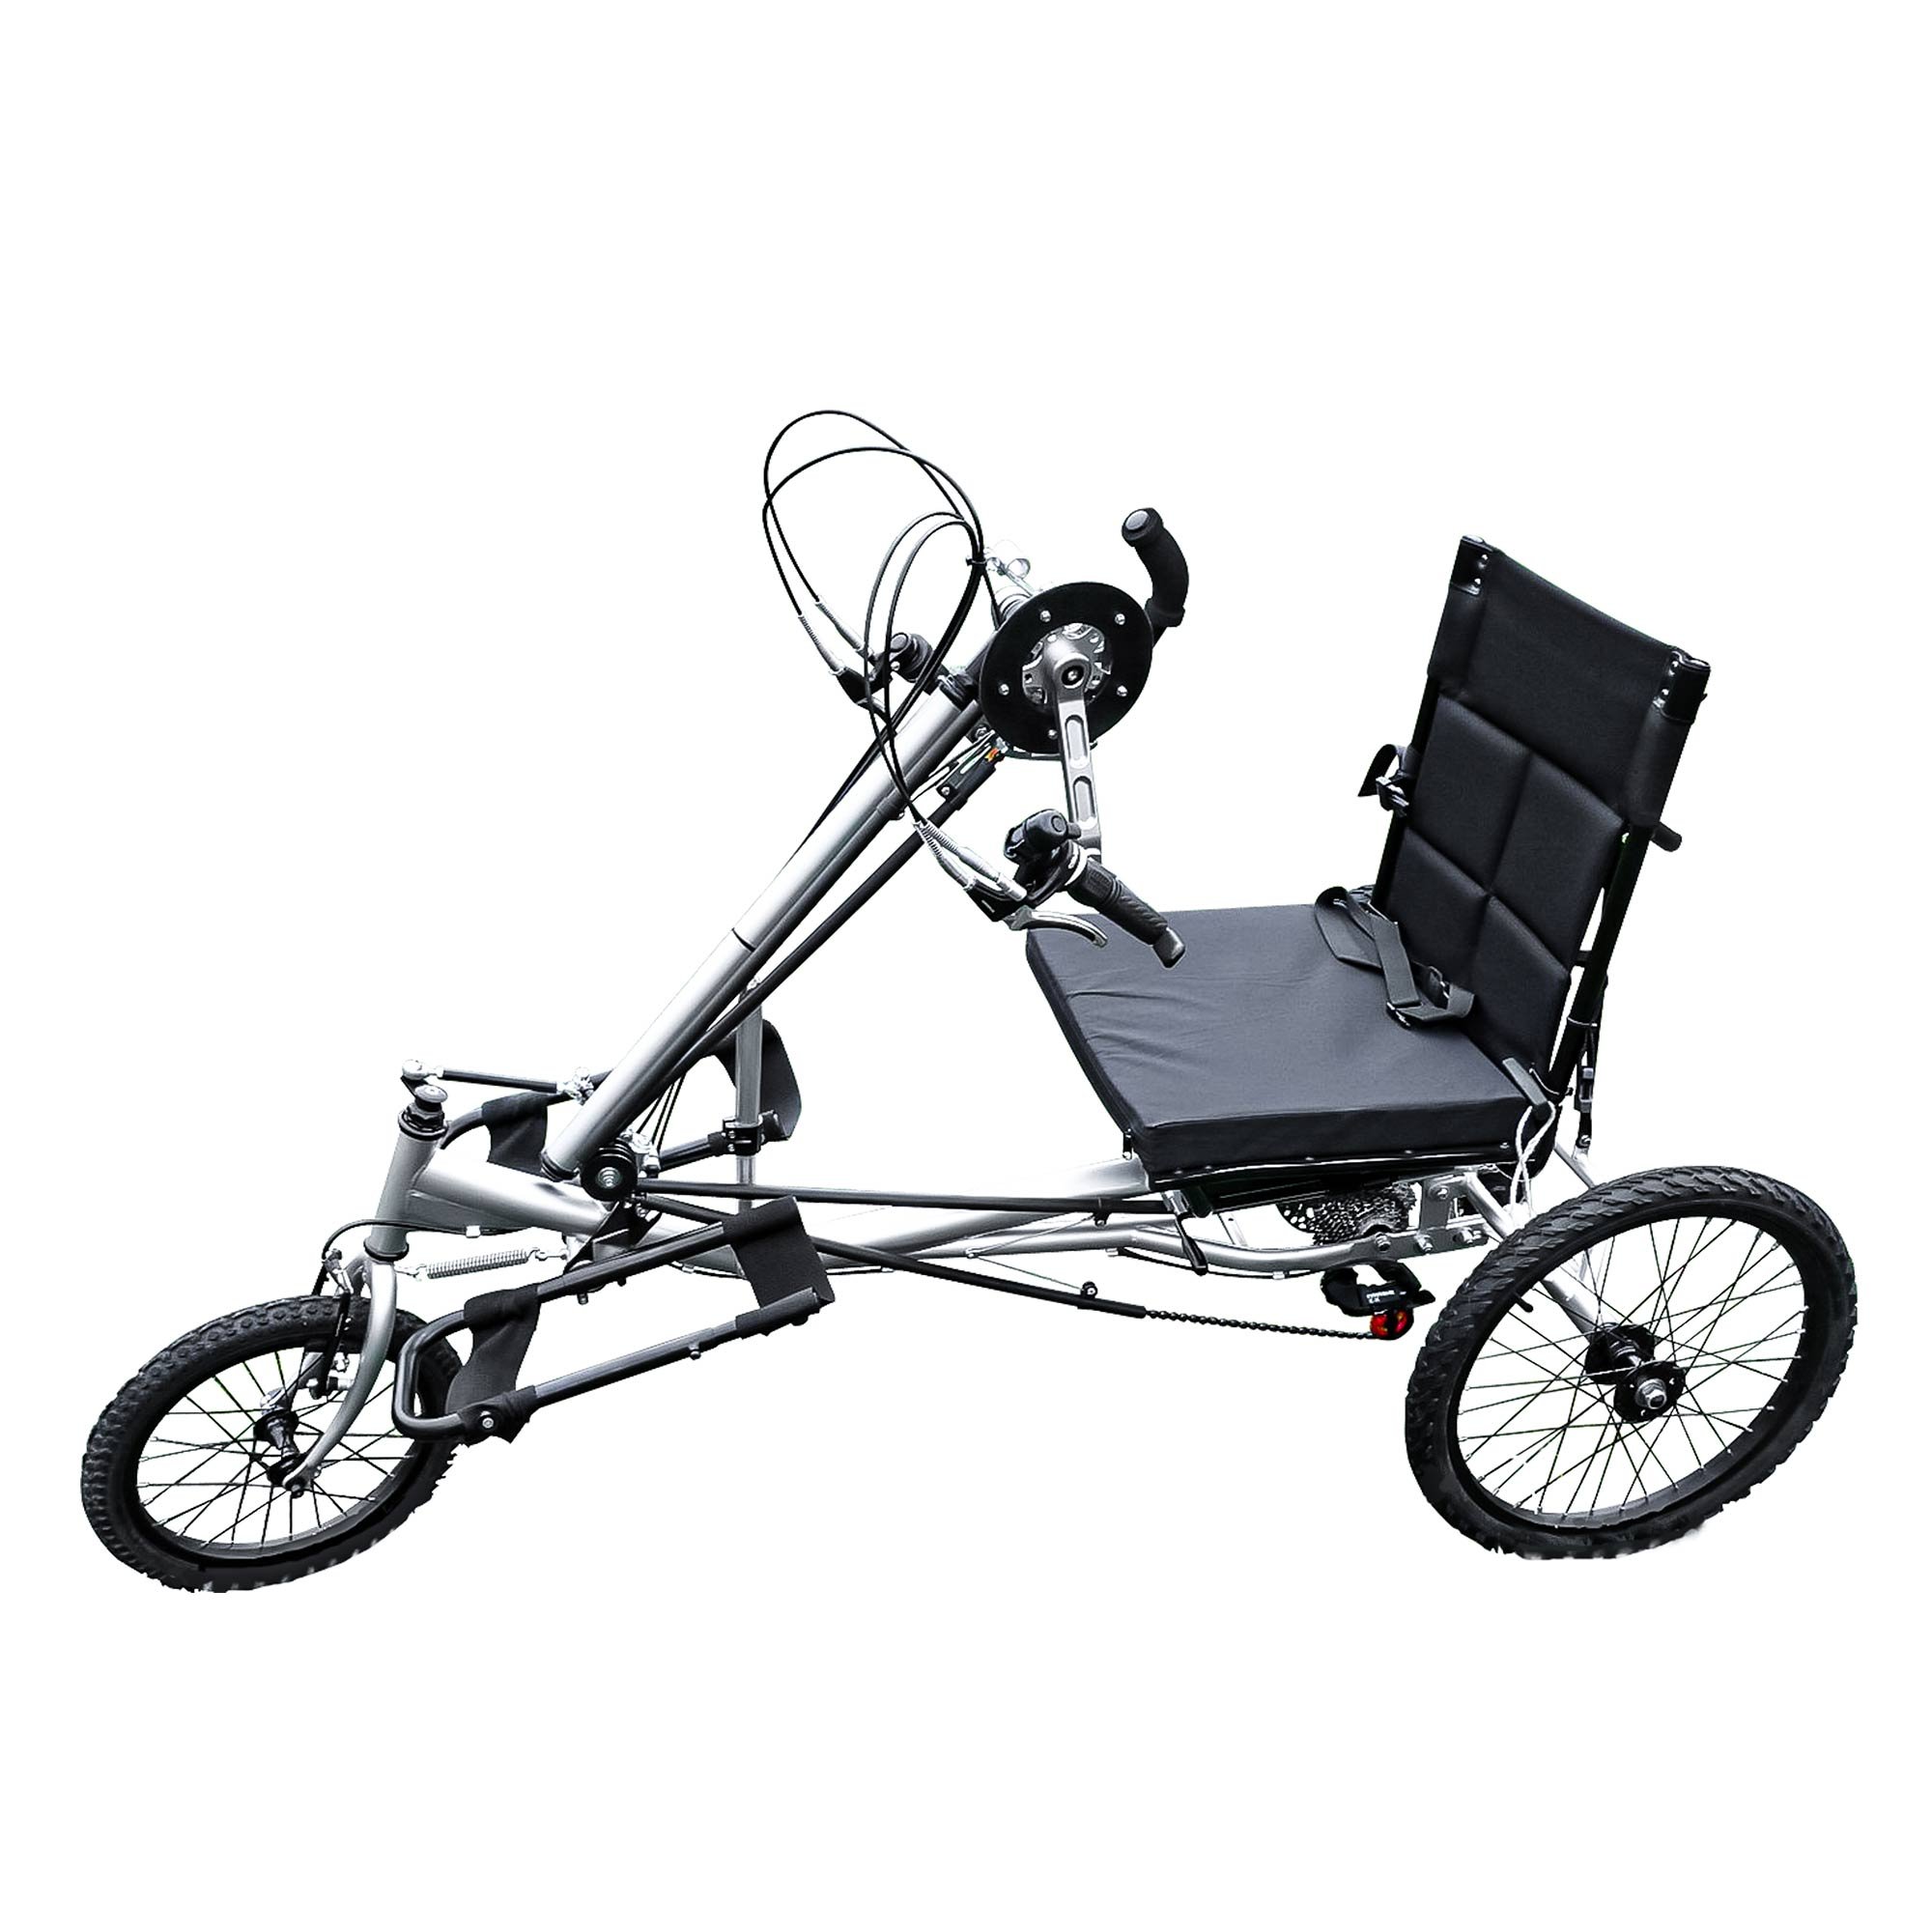 Купить ручную коляску. Хэндбайк для инвалидной коляски. Инвалидная велоколяска ММВЗ. Handbike 4х-колесный для инвалидов. Liliput трёхколёсный велосипед.